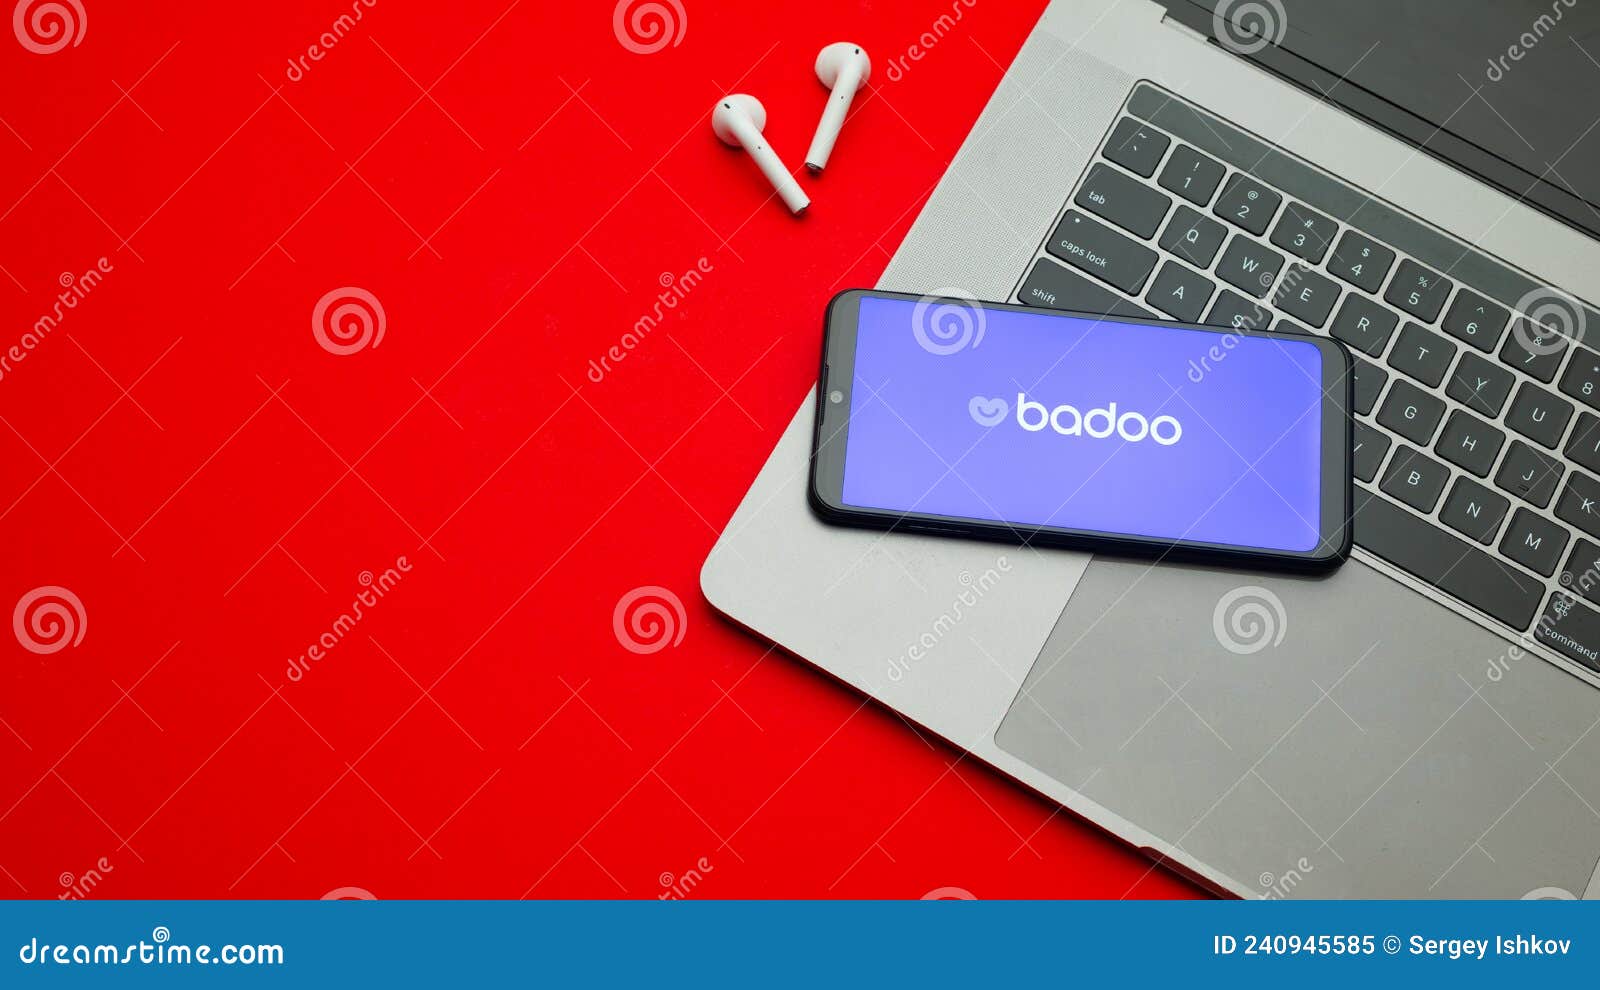 Badoo computer version